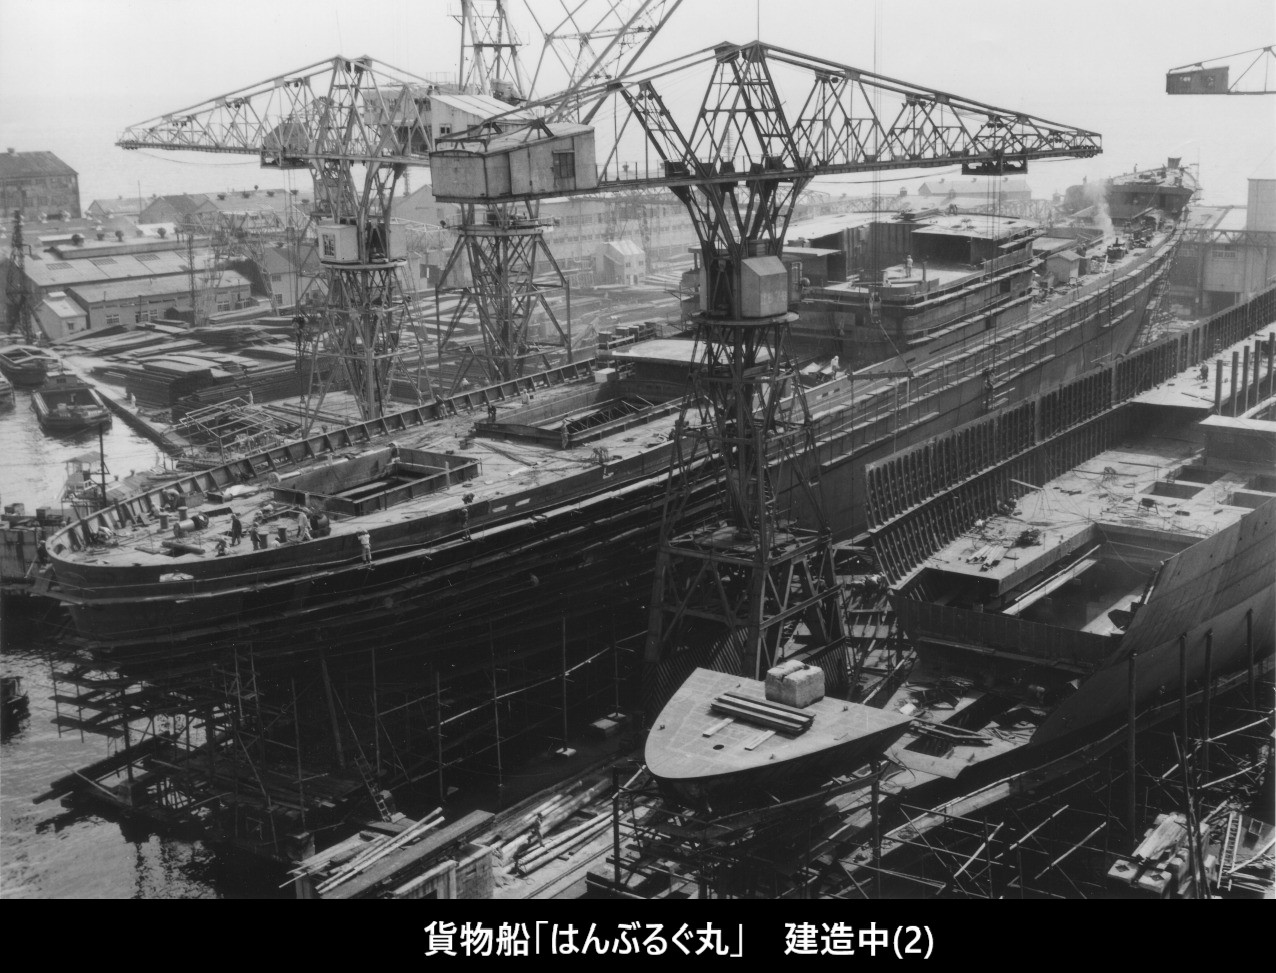 大阪商船「はんぶるぐ丸」写真集 | デジタル造船資料館